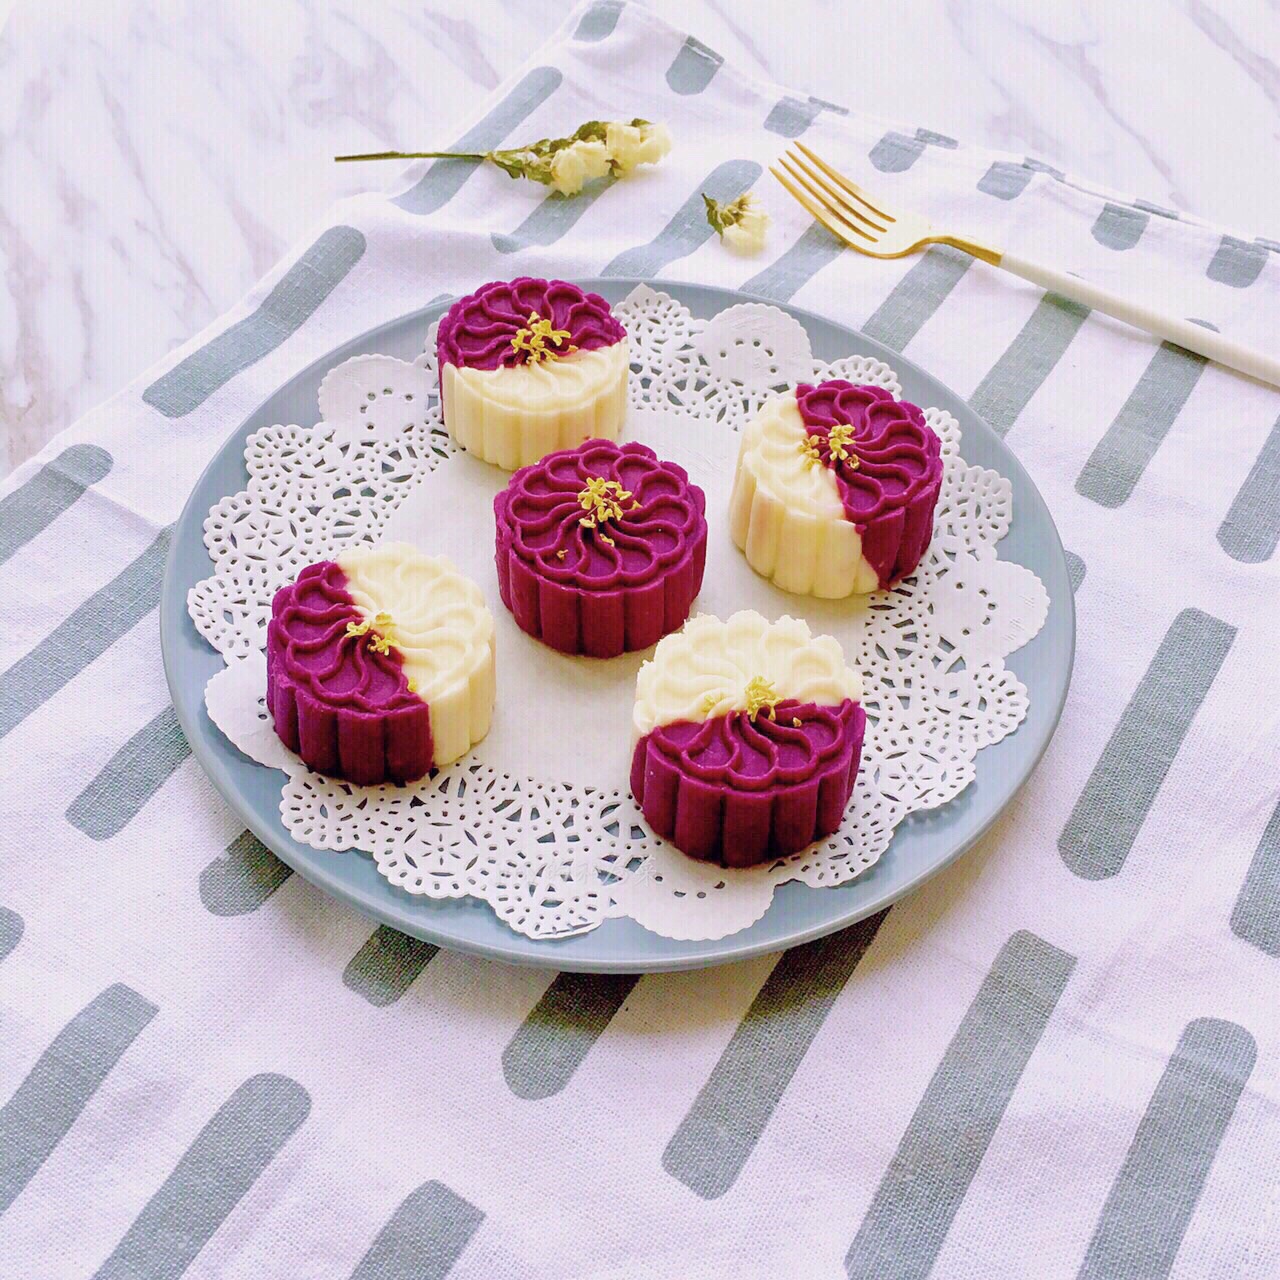 紫薯千层蛋糕 | 果冻蛋糕 | 夏日甜品 - 我的爱心食谱(小雁和阿成)